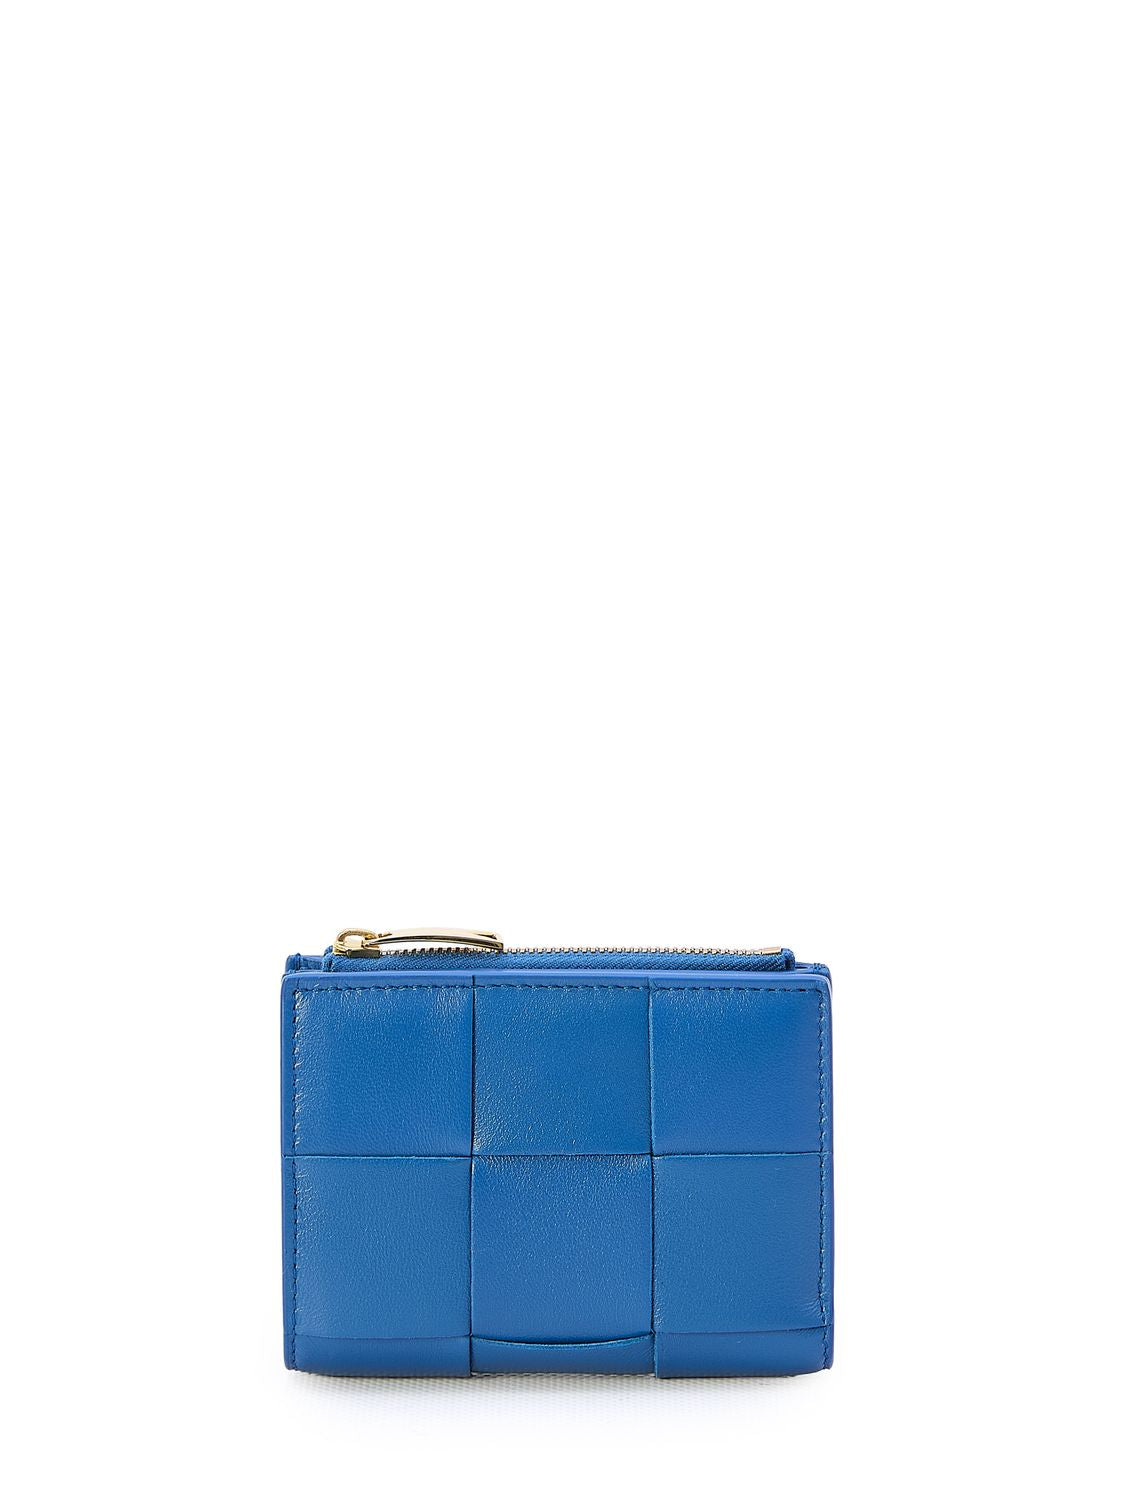 ブルー レザー財布 【女性向け】イントレッチオ モチーフ付き-小型でおしゃれ